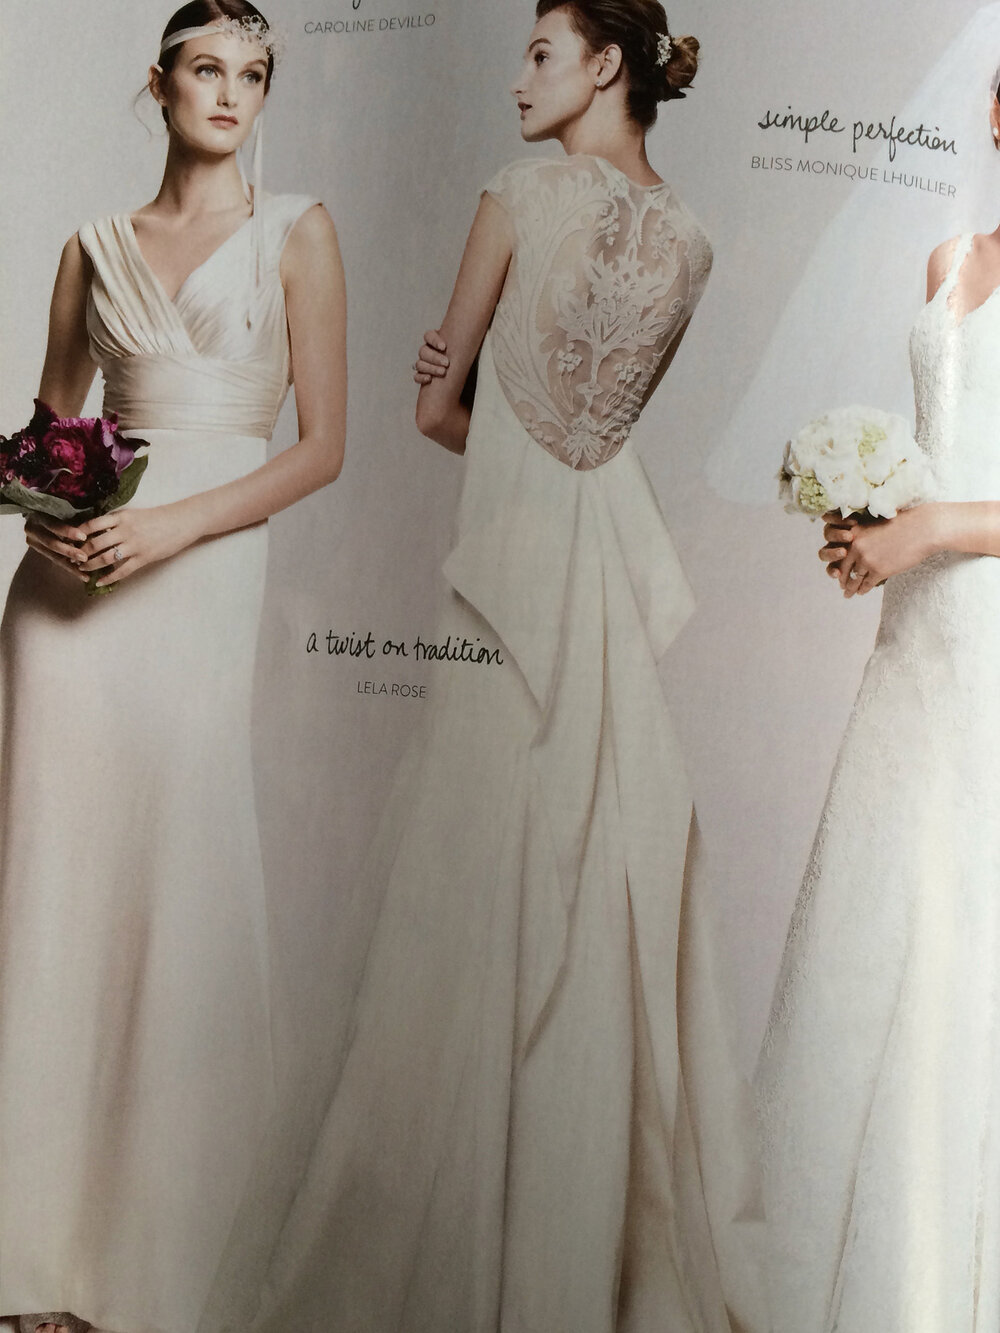 wds-wedding-dress-mag-1.JPG